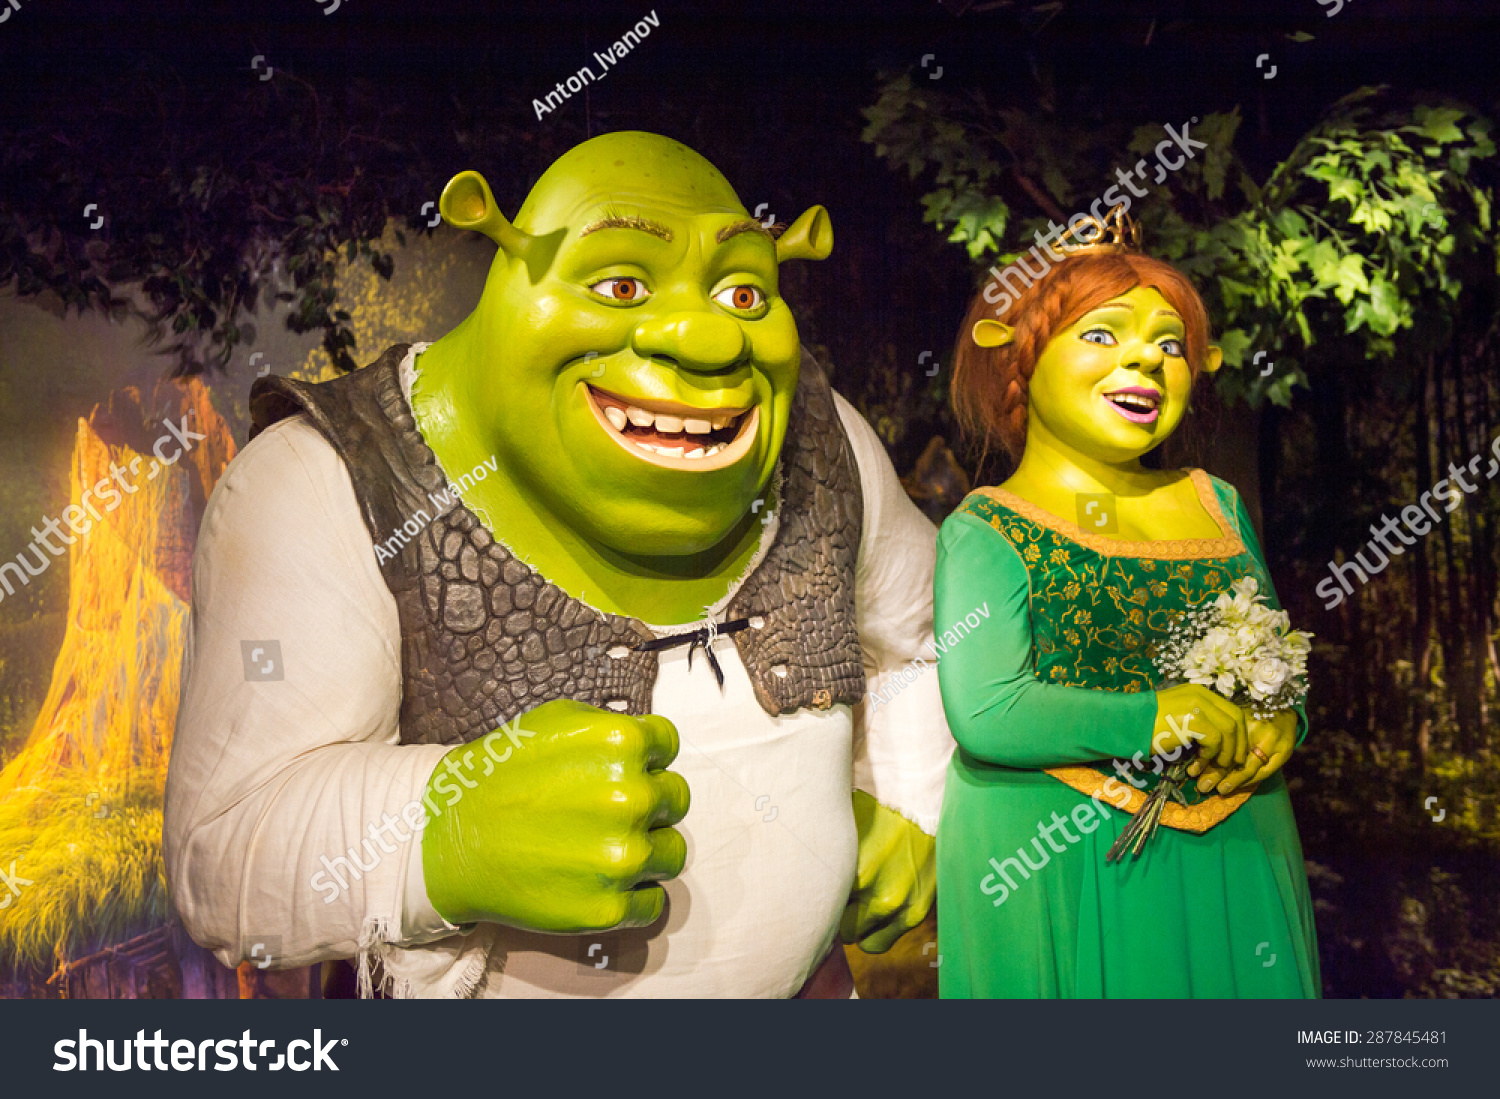 annie barron recommends Fotos De Shrek Y Fiona